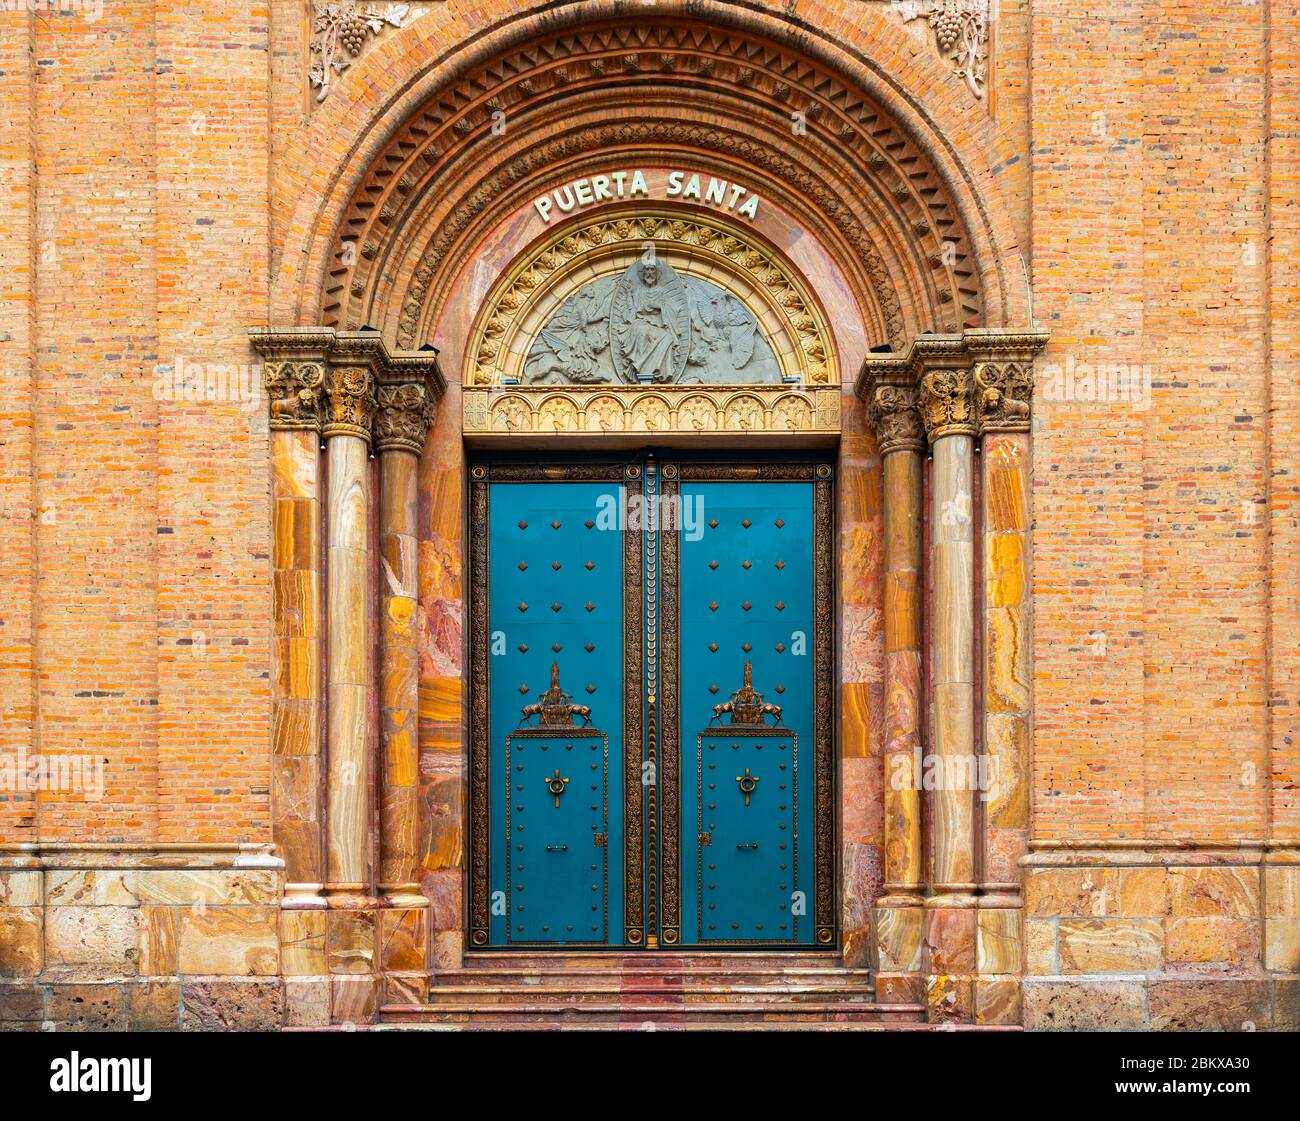 Eingang mit türkisfarbener Tür der Neuen Kathedrale in Cuenca, Ecuador. Übersetzung an der Tür: 'Puerta Santa' = 'Heilige Tür'. Stockfoto